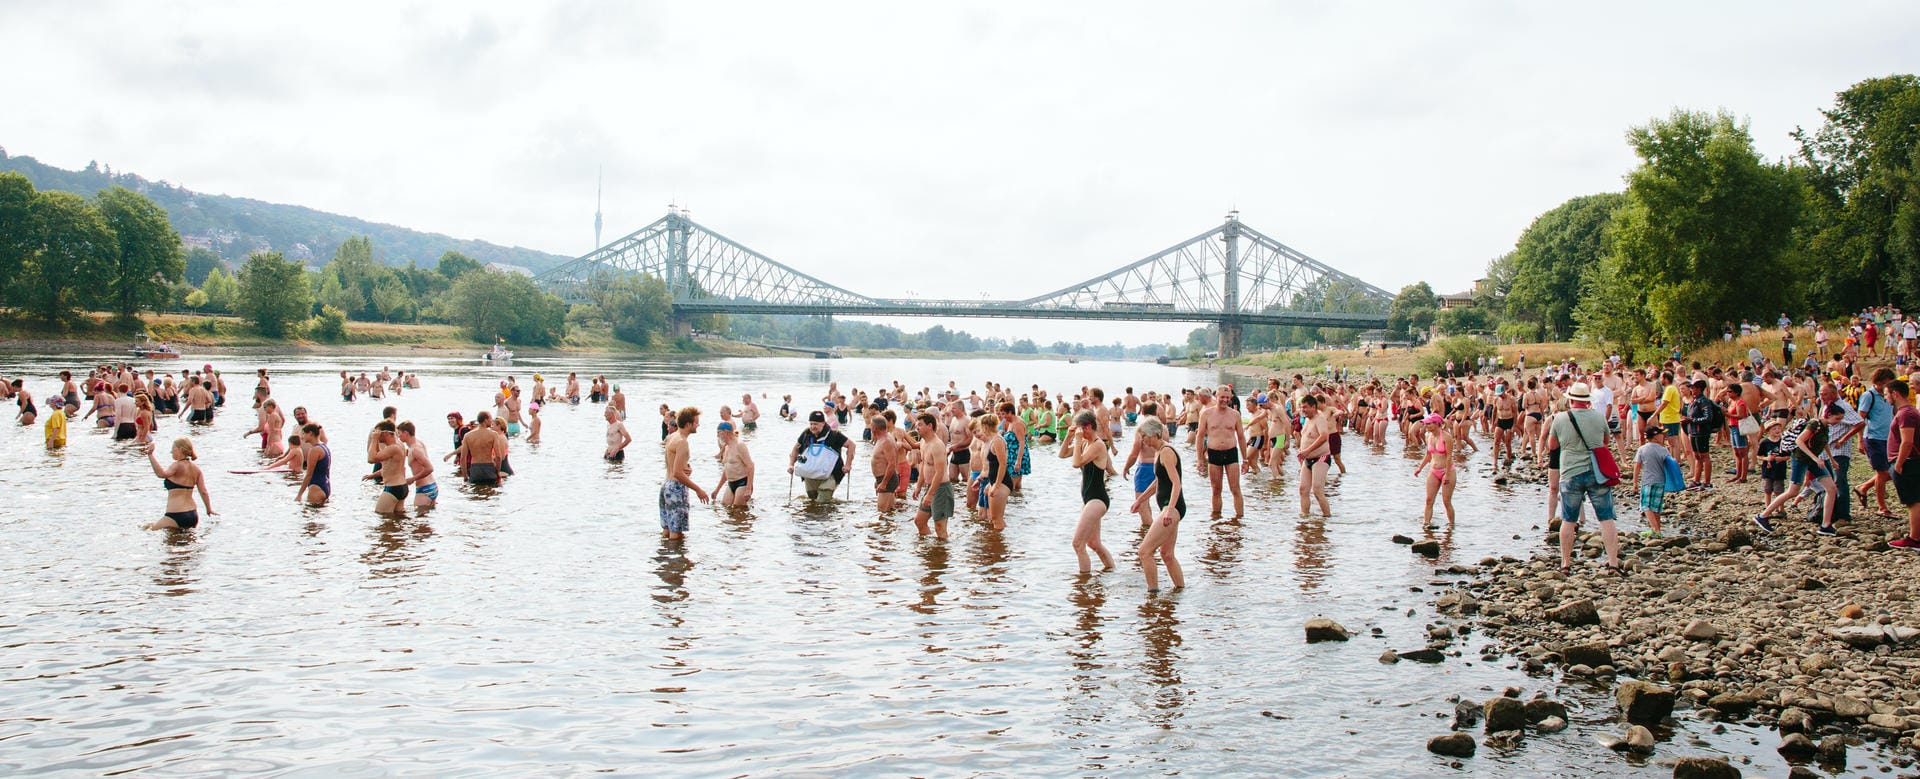 Früher war mehr Wasser: Elbschwimmen am Wochenende in Dresden. Hunderte Menschen schwammen beim 21. Elbschwimmen die drei Kilometer zwischen der Brücke "Blaues Wunder" und dem Johannstädter Fährgarten.